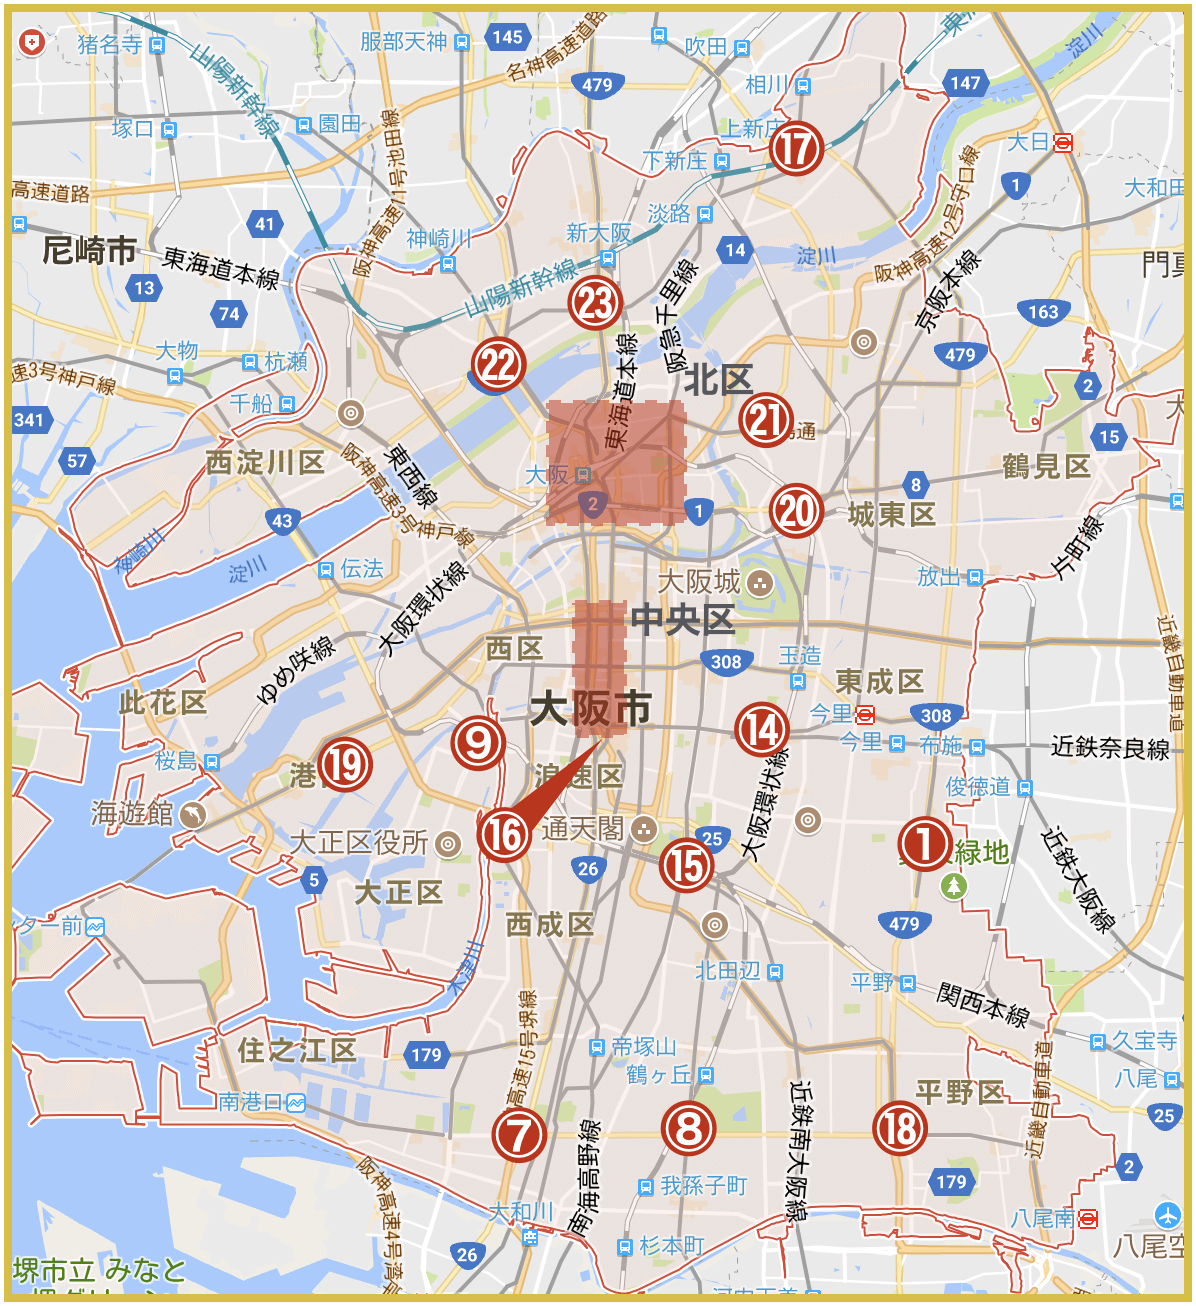 大阪府大阪市にあるプロミス店舗・ATMの位置（2020年版）